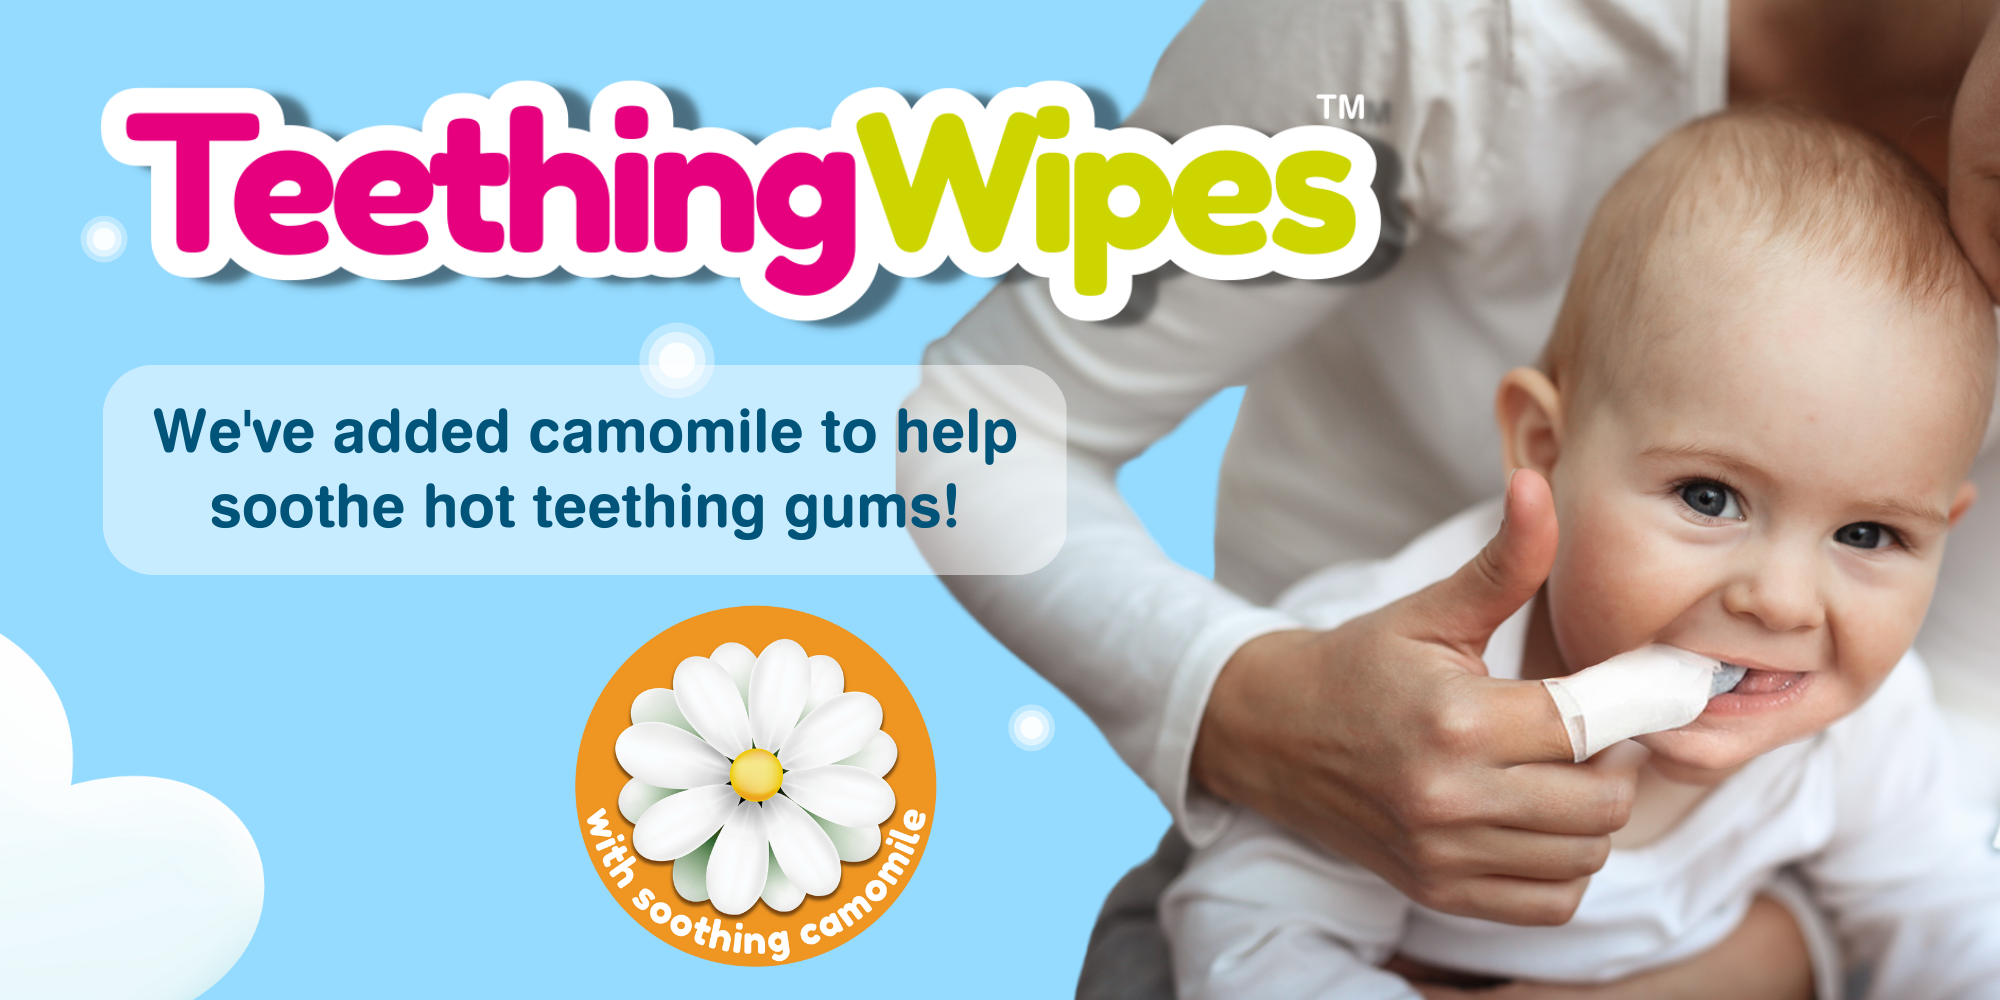 Teething wipes teething remedies for baby clean gums soothe teething